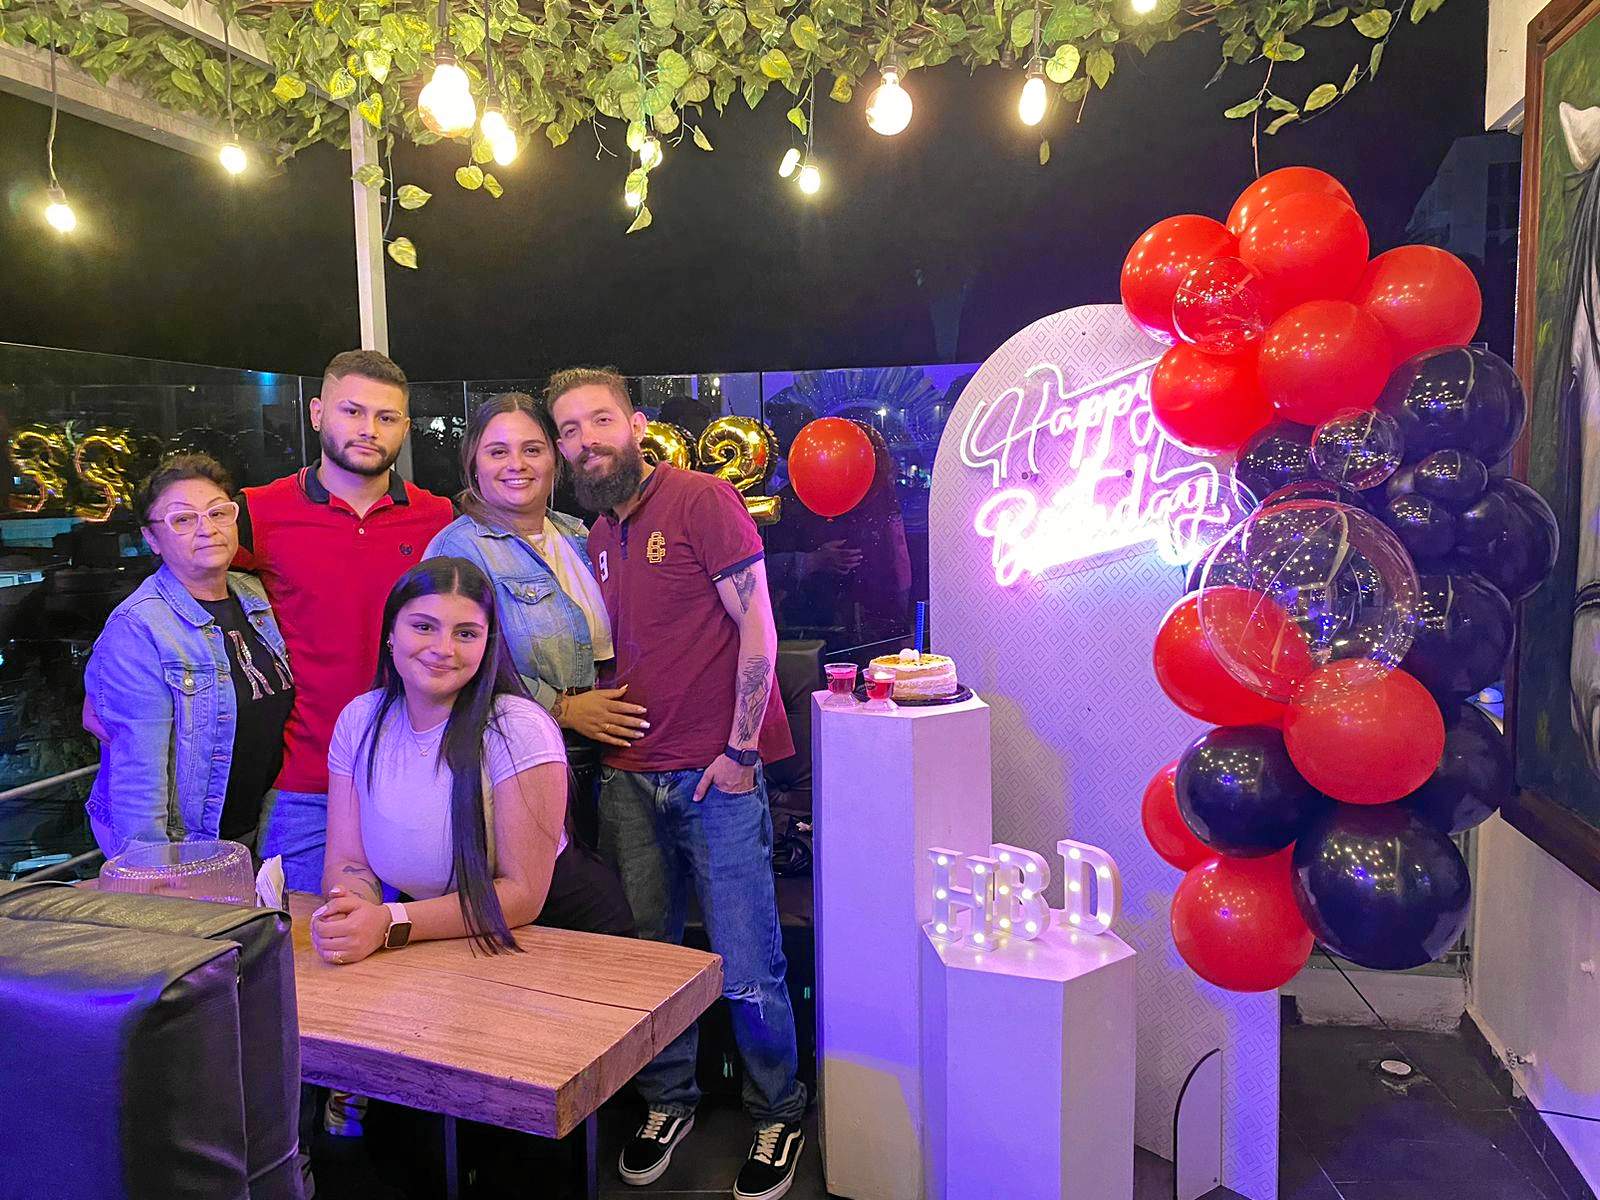 Amary Posada, Nicolás Posada, Francy Posada, Mariana Posada y Clinton Montoya, se reunieron en una comida para celebrar el cumpleaños de Nicolás.